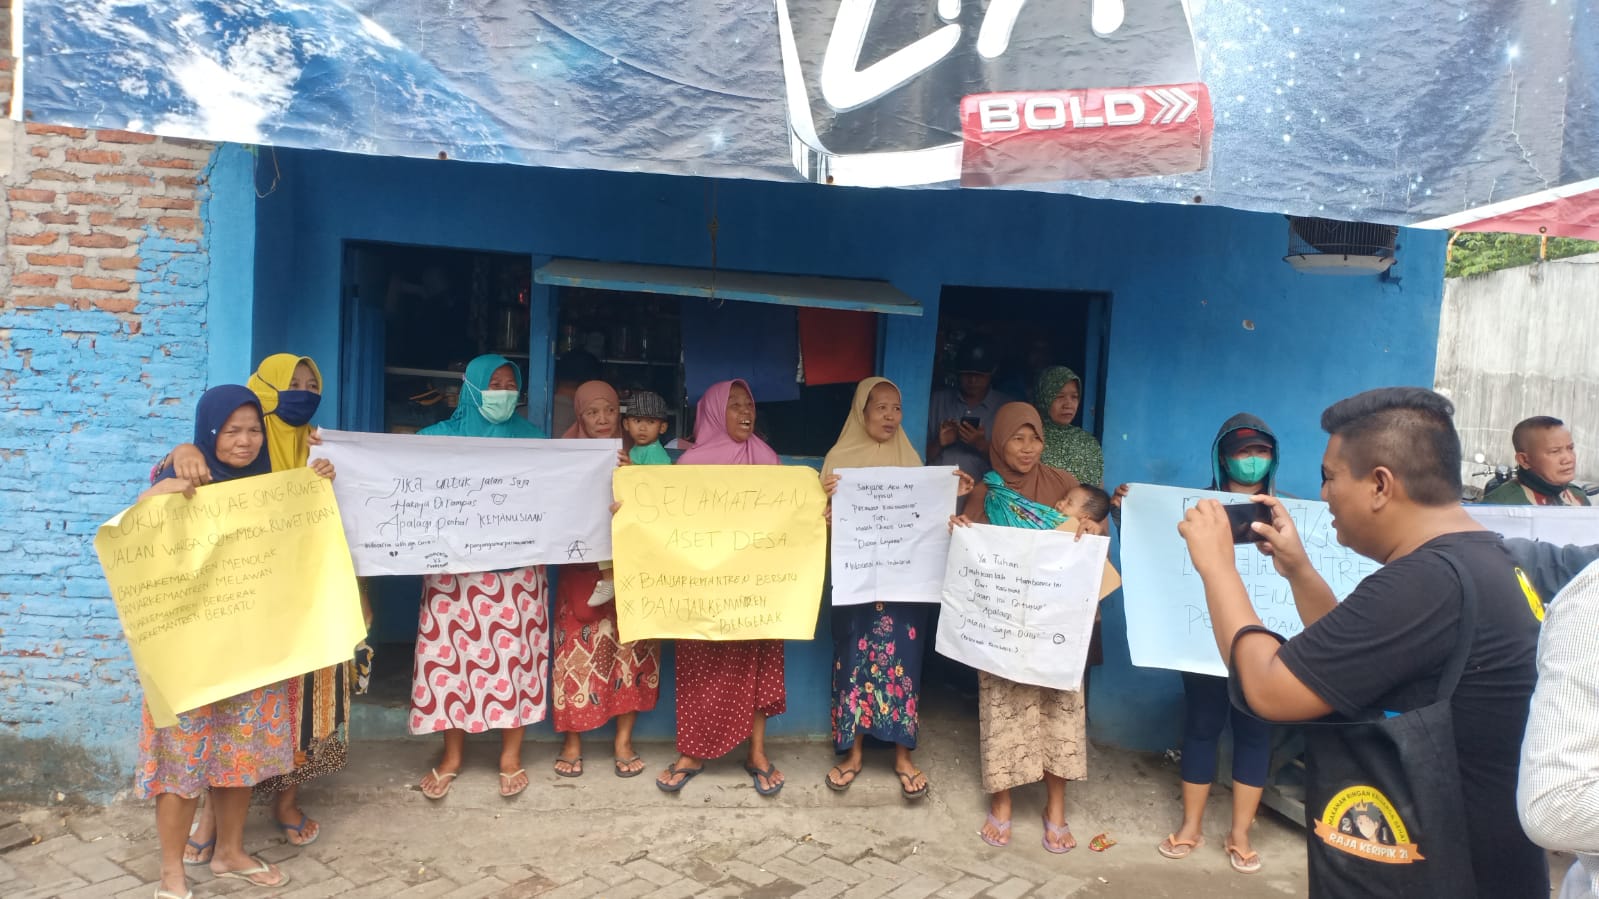 Warga Banjar Kemantren Sidoarjo Bersatu Pertahankan Jalan Desa Yang Akan Dikuasai PT Indo Ceria Plastik & Printing